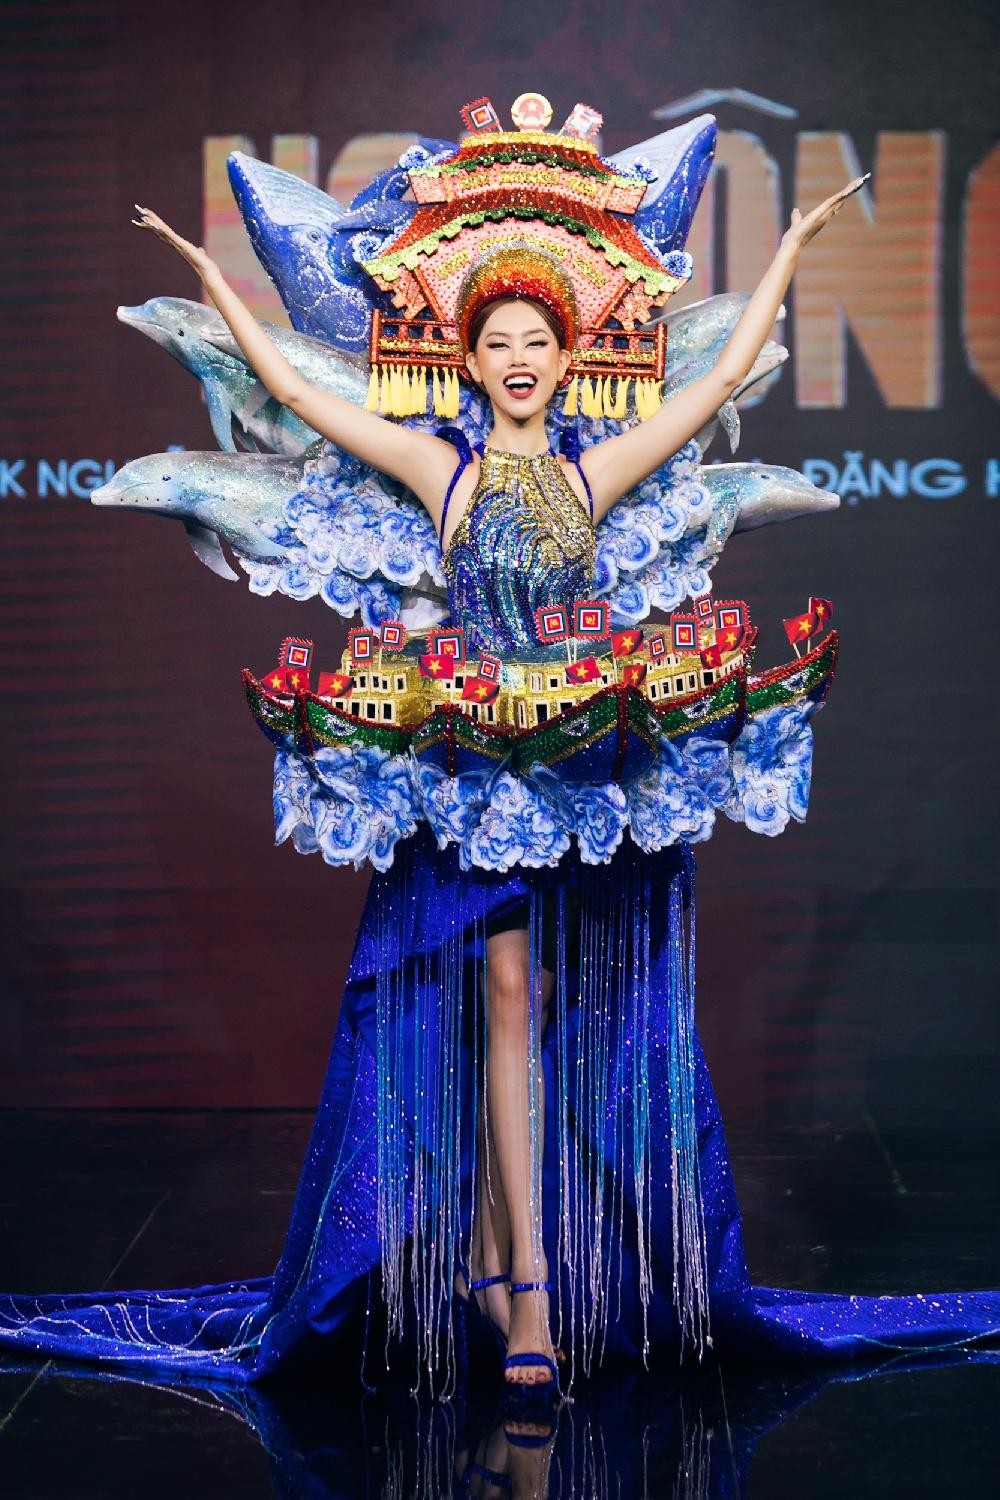 Thiết kế nào được chọn làm Trang phục Dân tộc cho tân Hoa hậu Hoàn vũ Việt Nam? ảnh 2